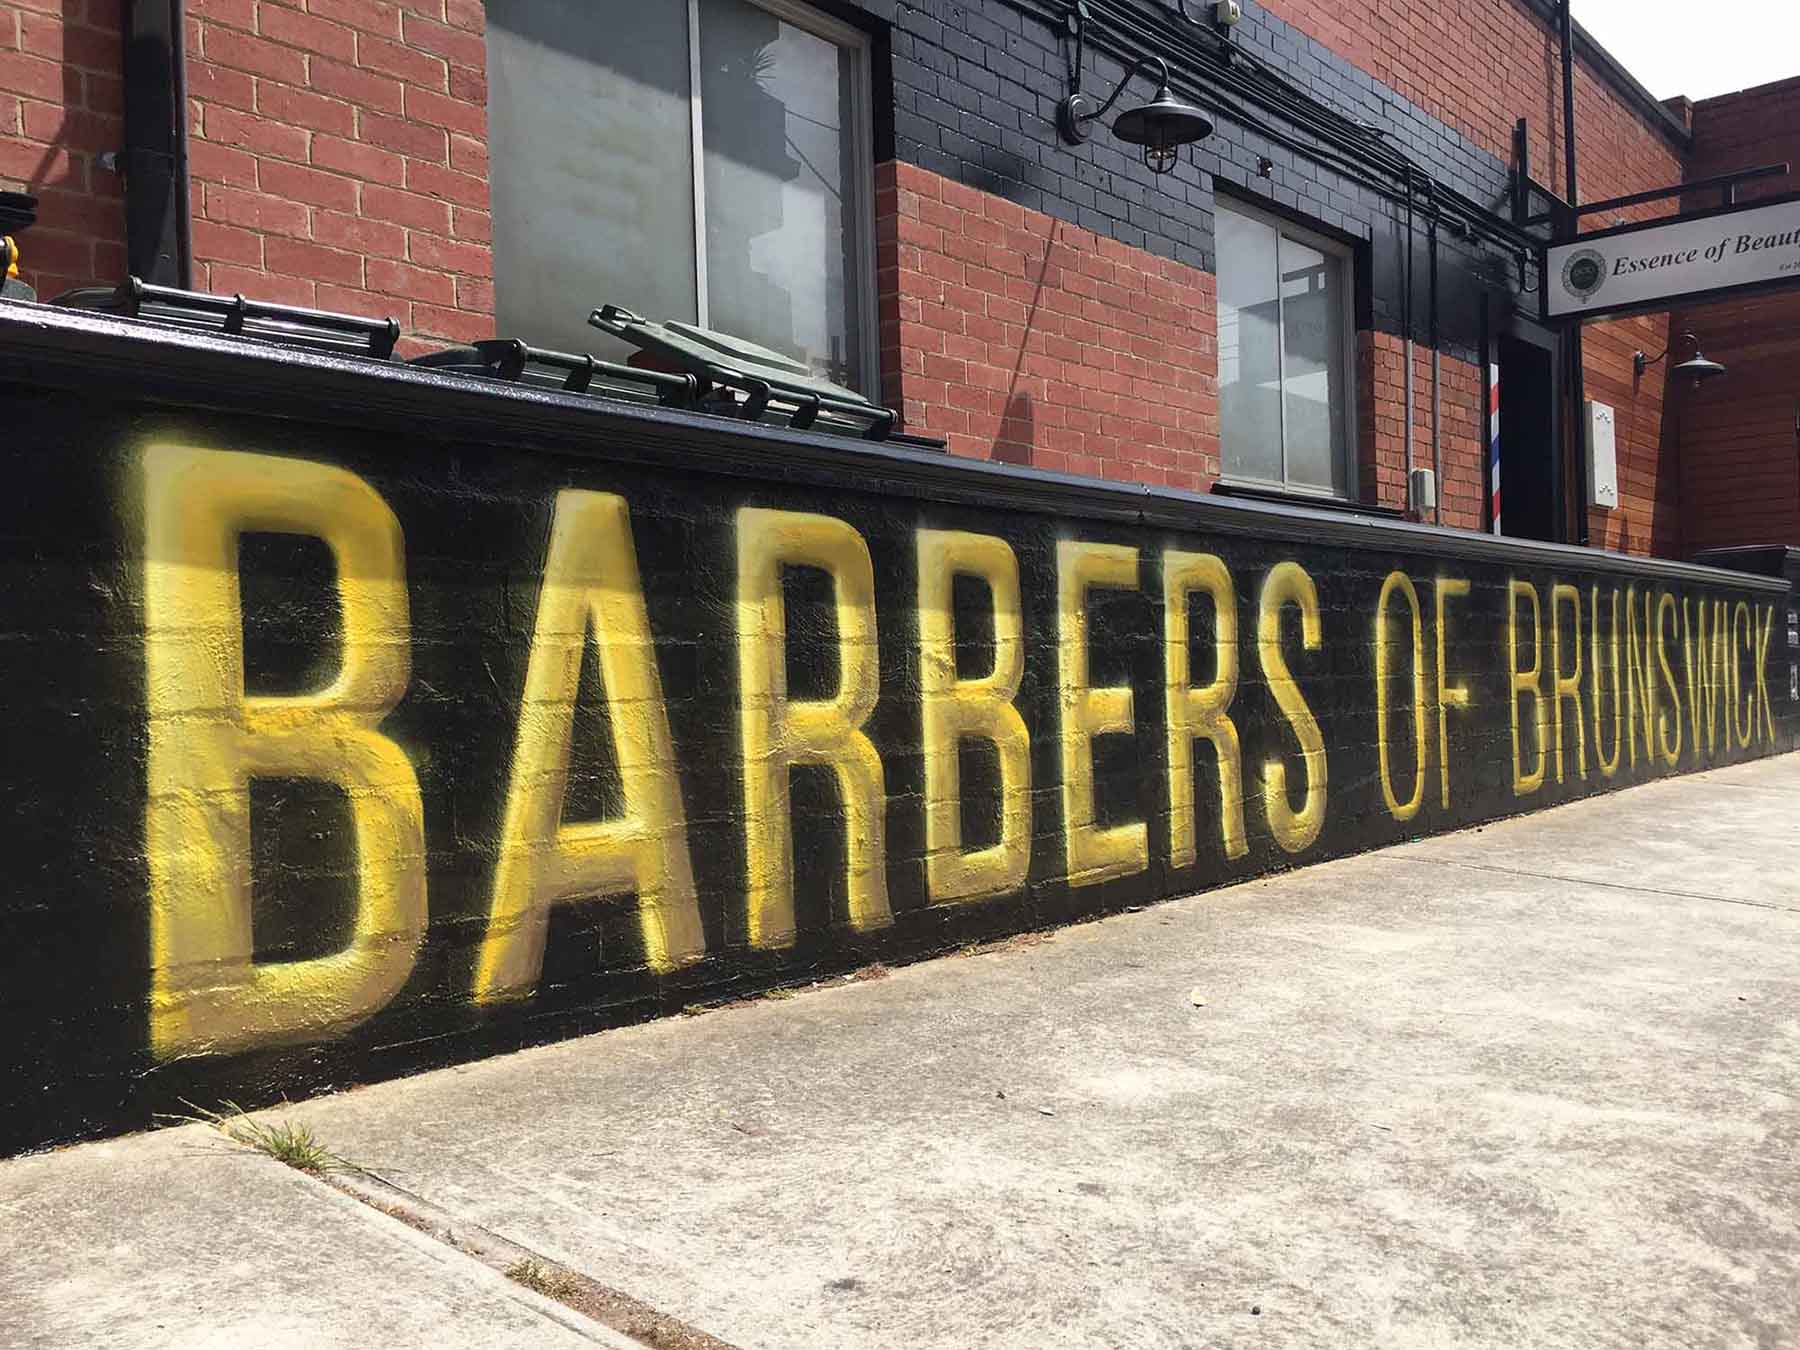 Barbershop graffiti branding design.